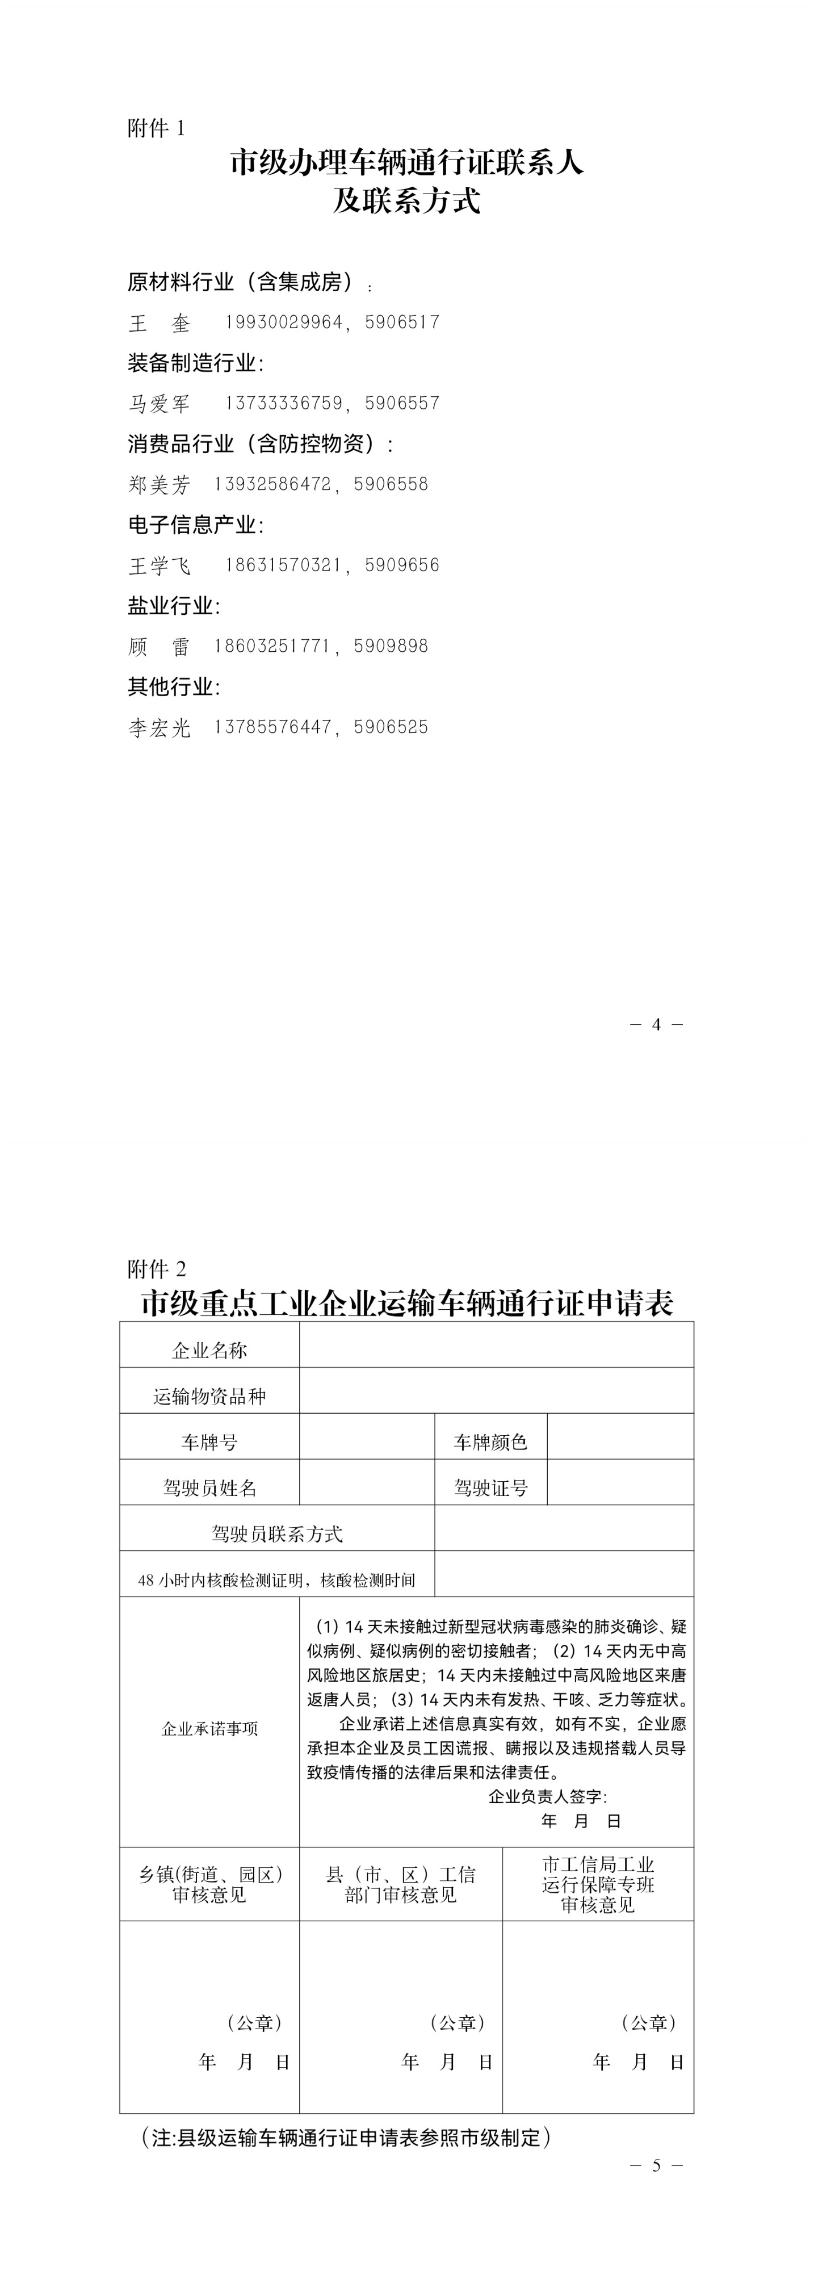 唐山市工业和信息局关于为重点工业企业办理运输车辆通行证的通知2.jpg